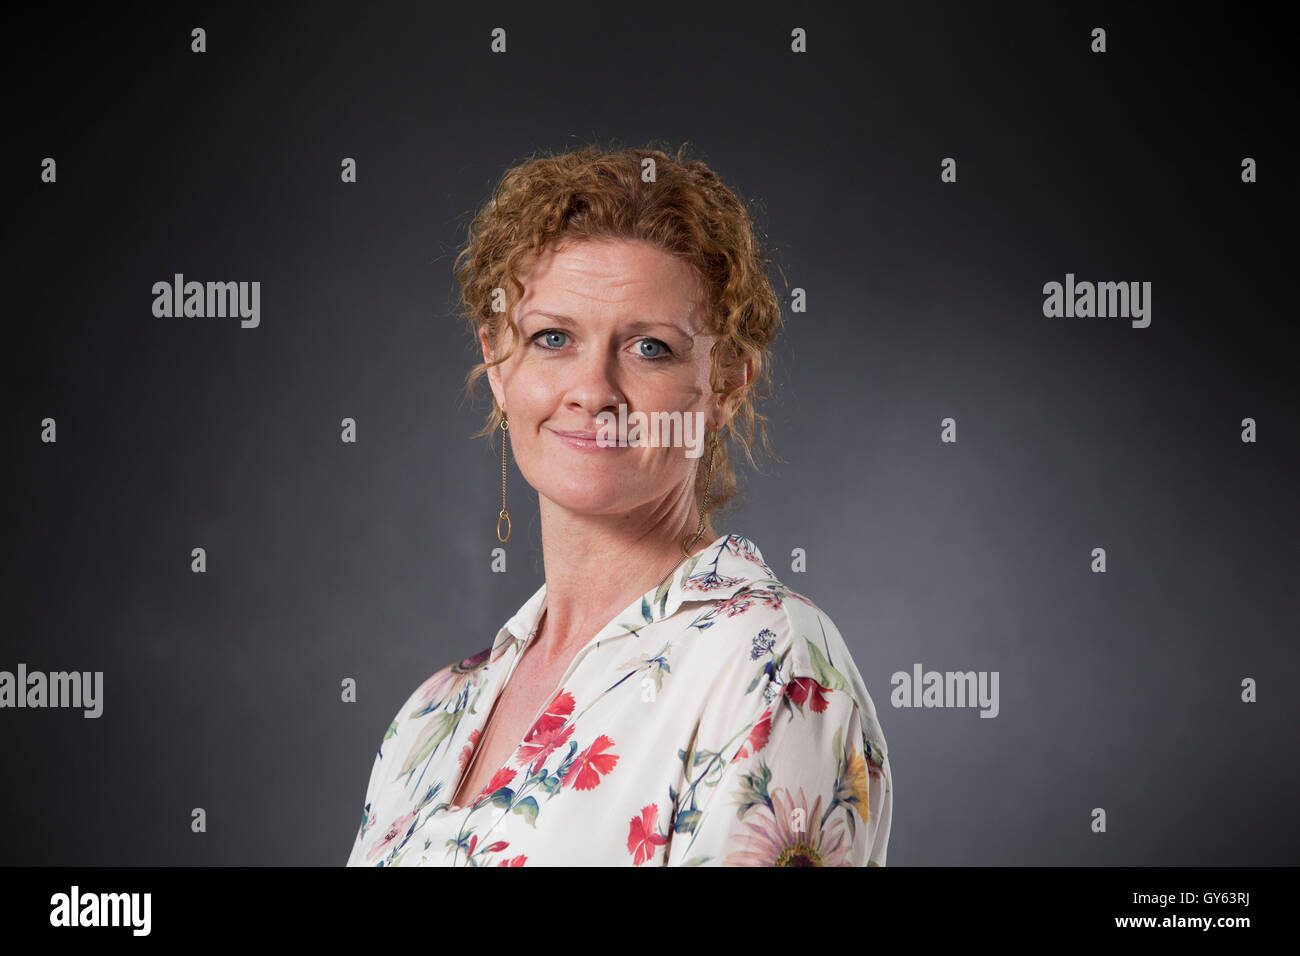 Susan Fletcher, le romancier britannique, à l'Edinburgh International Book Festival. Edimbourg, Ecosse. 22 août 2016 Banque D'Images